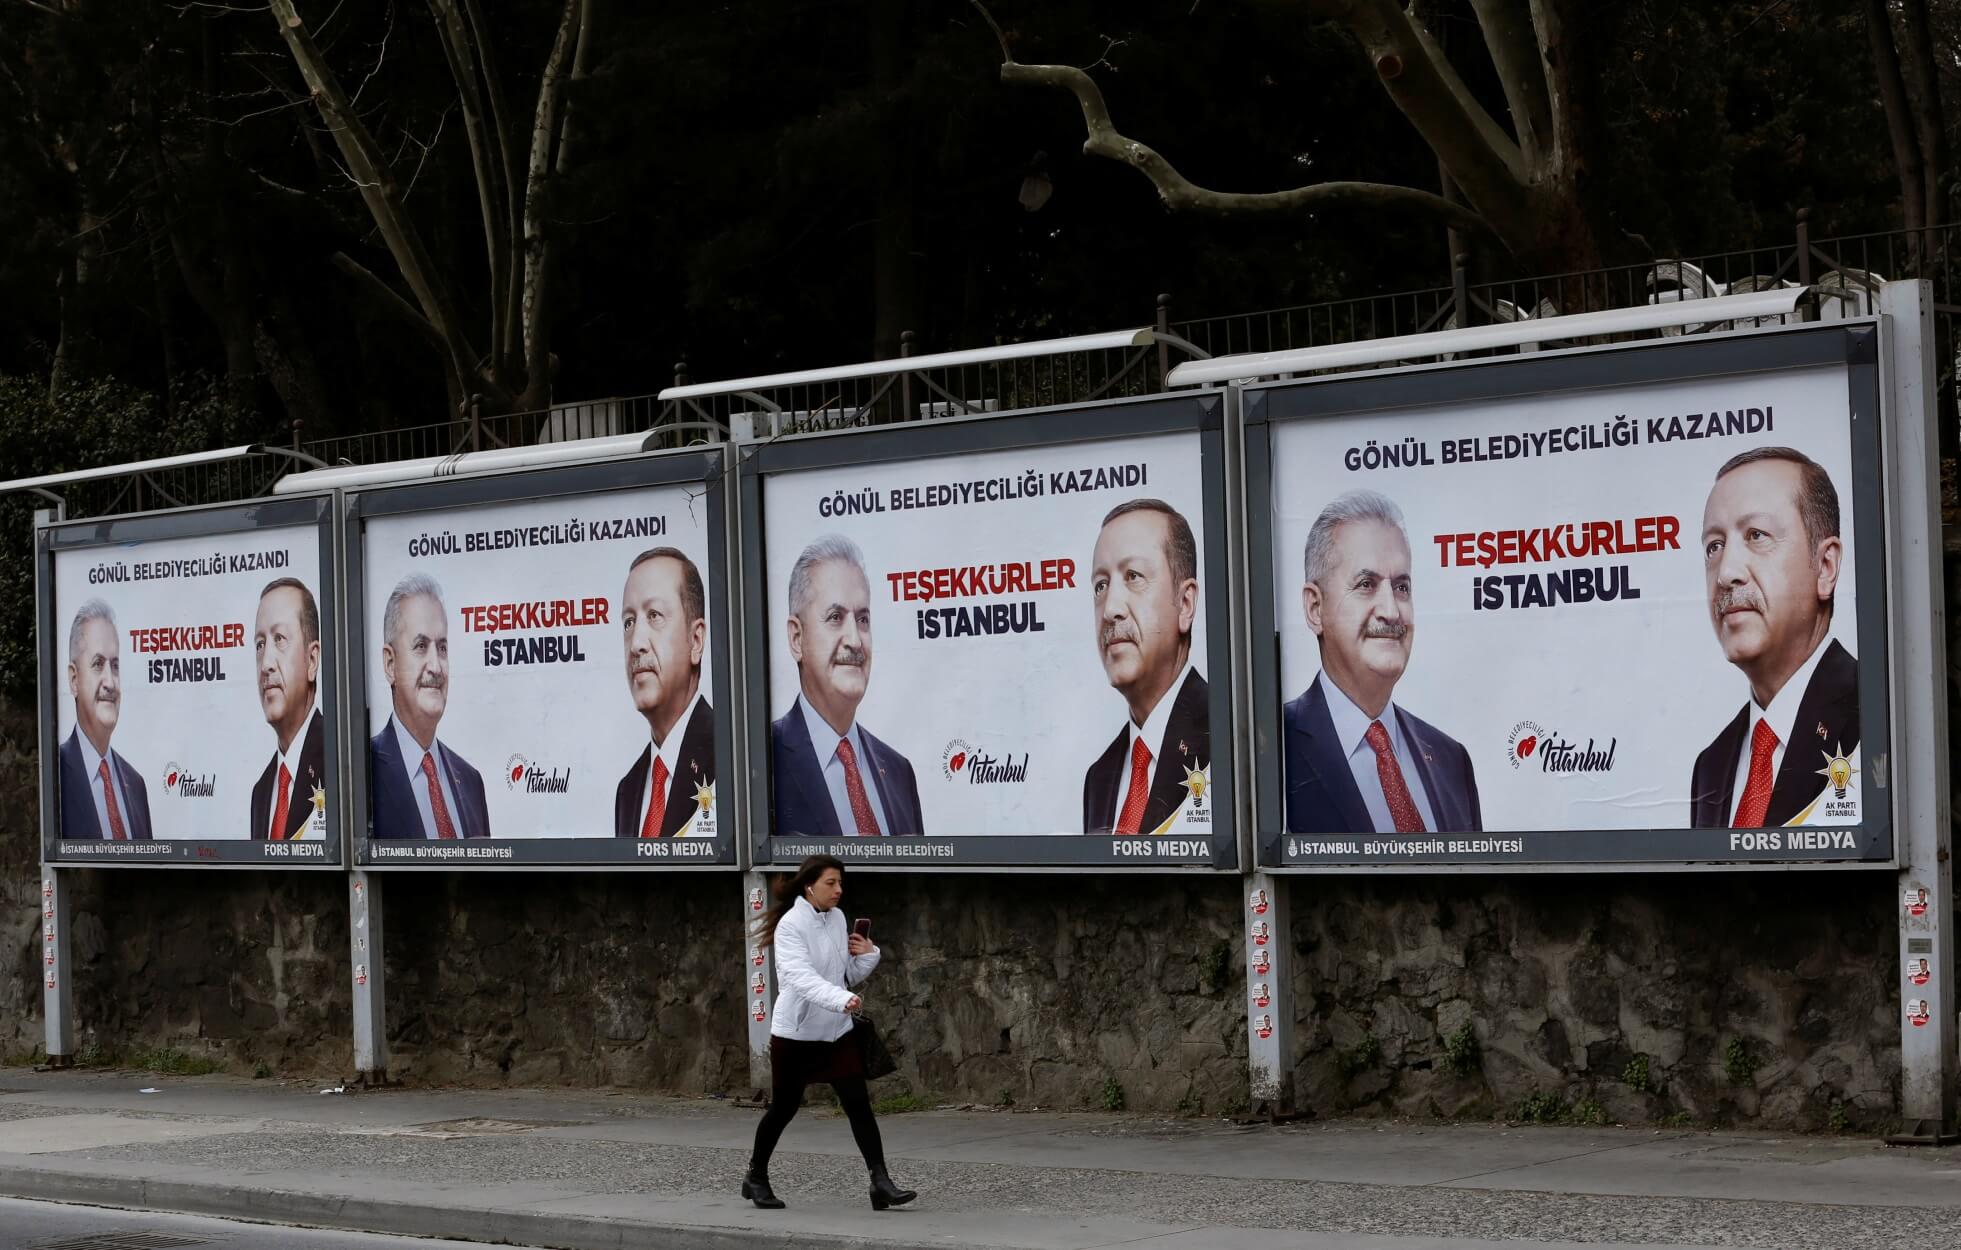 Κωνσταντινούπολη: Θα σεβαστεί τα αποτελέσματα της νέας καταμέτρησης δηλώνει το κόμμα του Ερντογάν